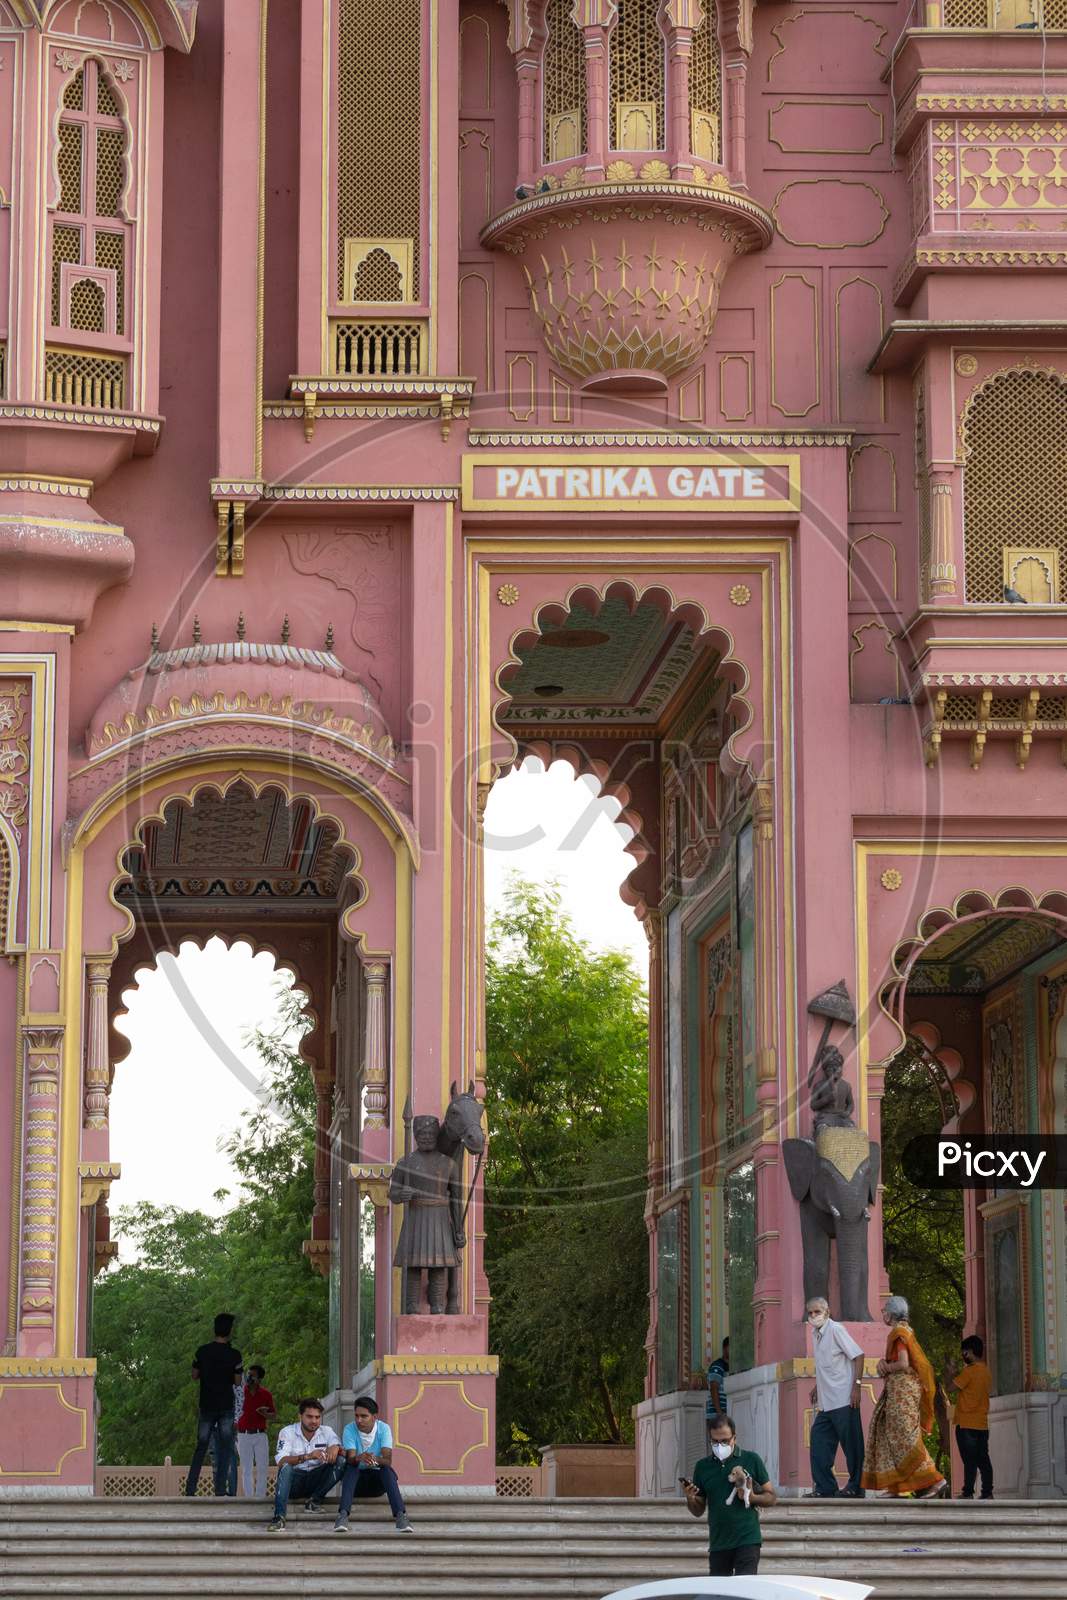 Visitors visiting Patrika Gate, entrance gate of Jawahar circle garden in Jaipur